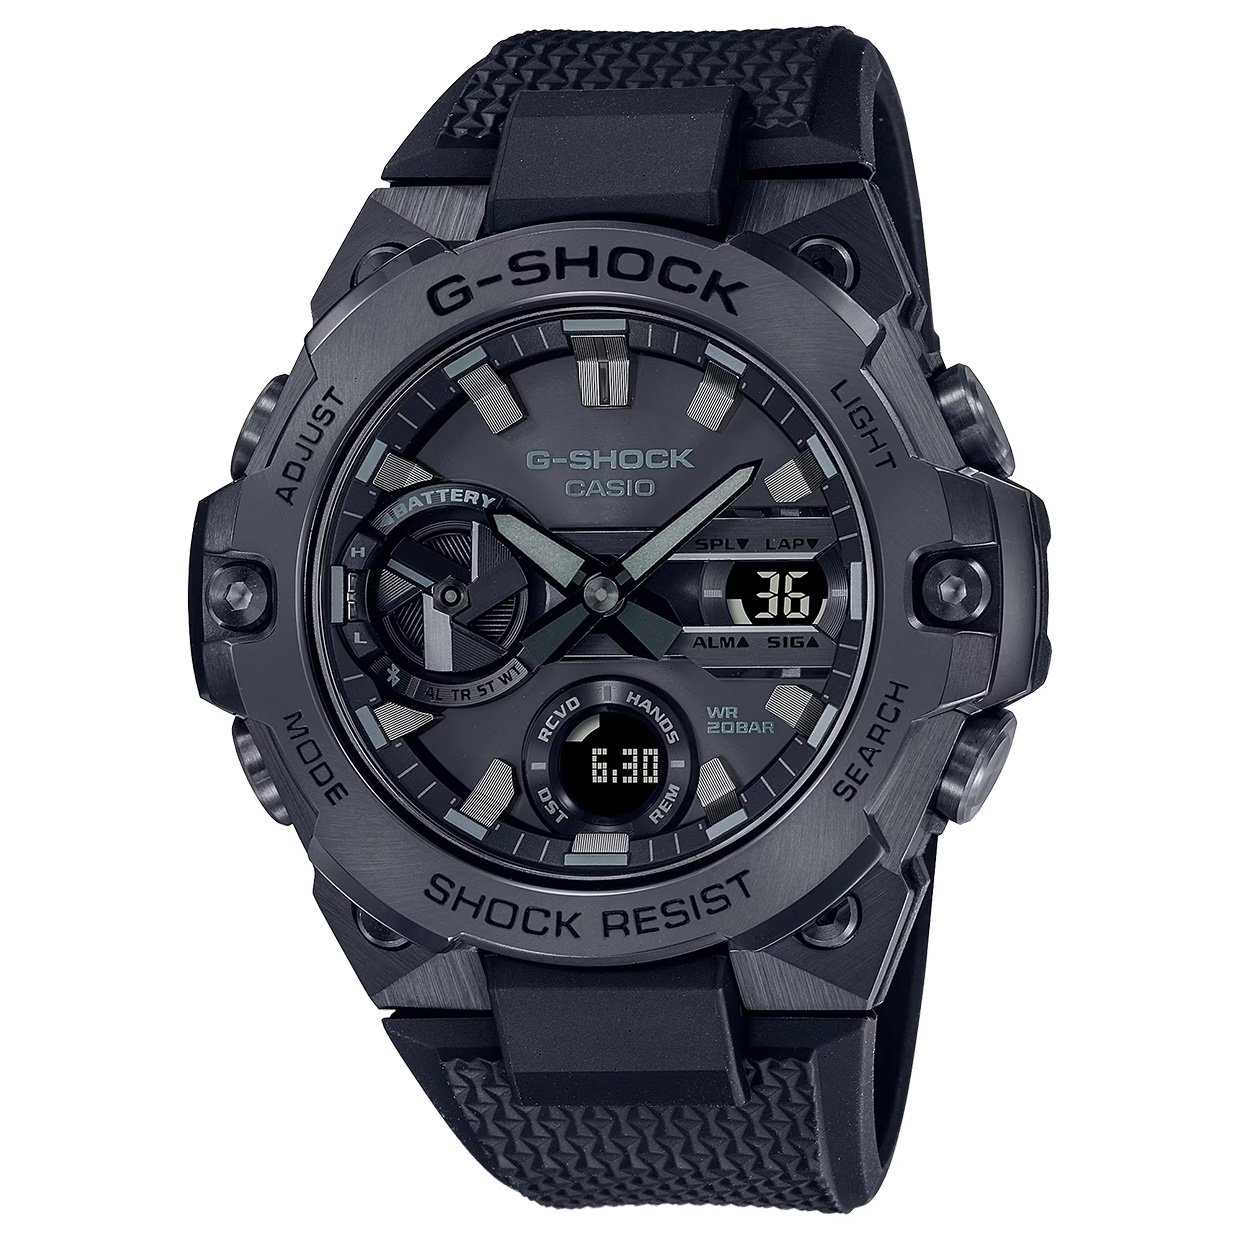 Casio G-SHOCK GST-B400 Analog/Digital Watch: Back in Black